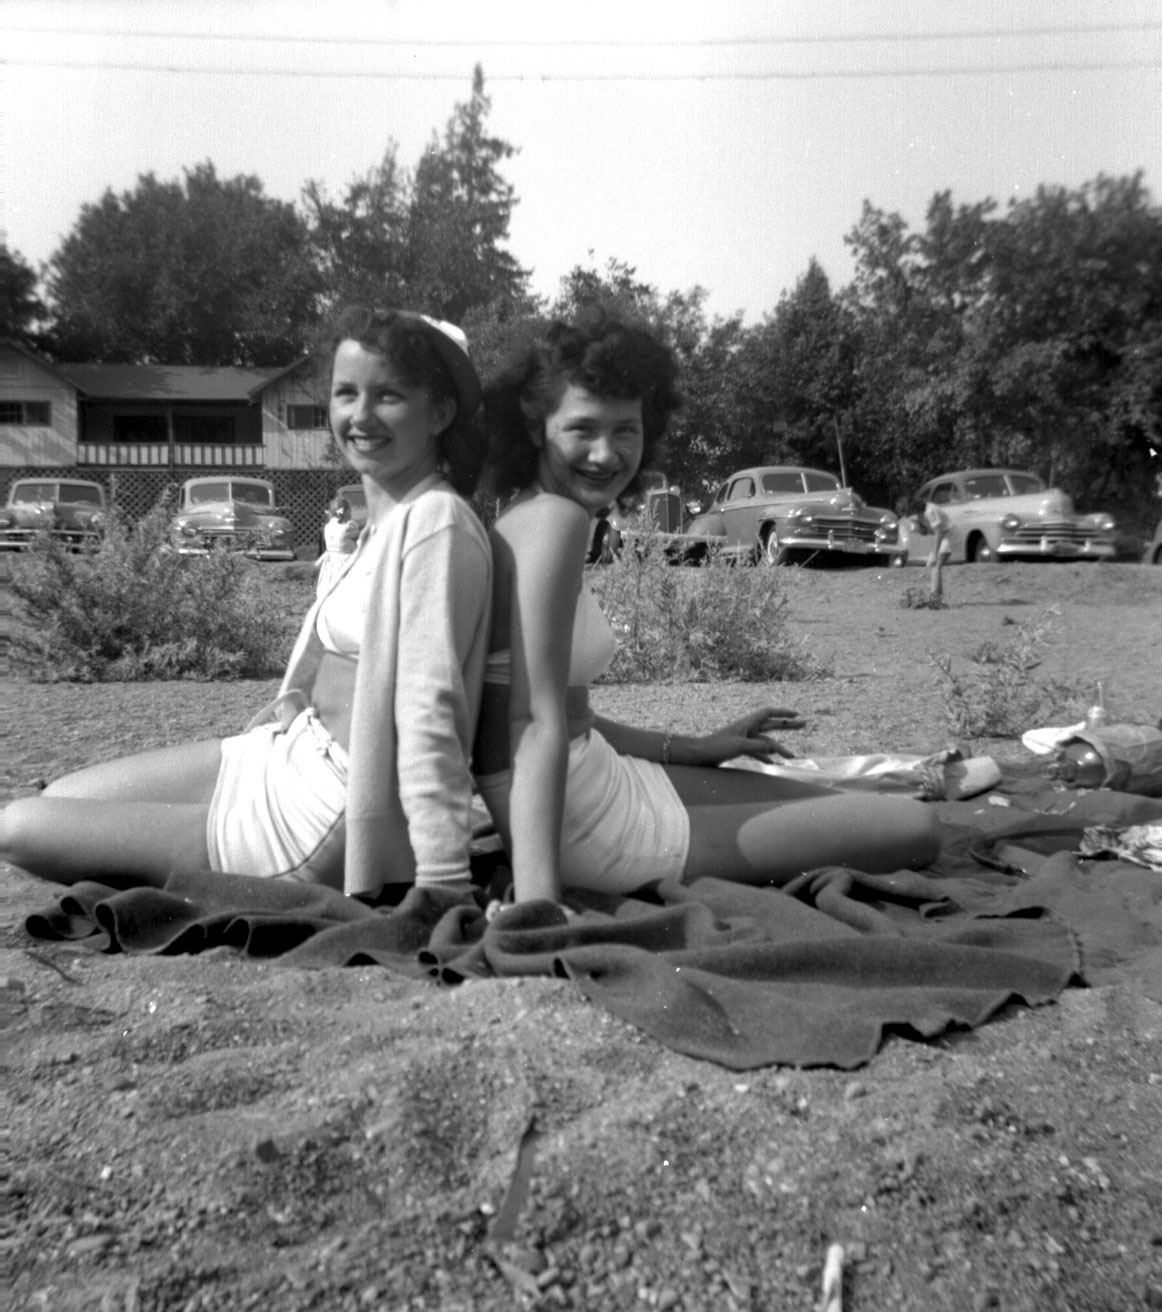 found photos 1949 1950 vernacular snapshots